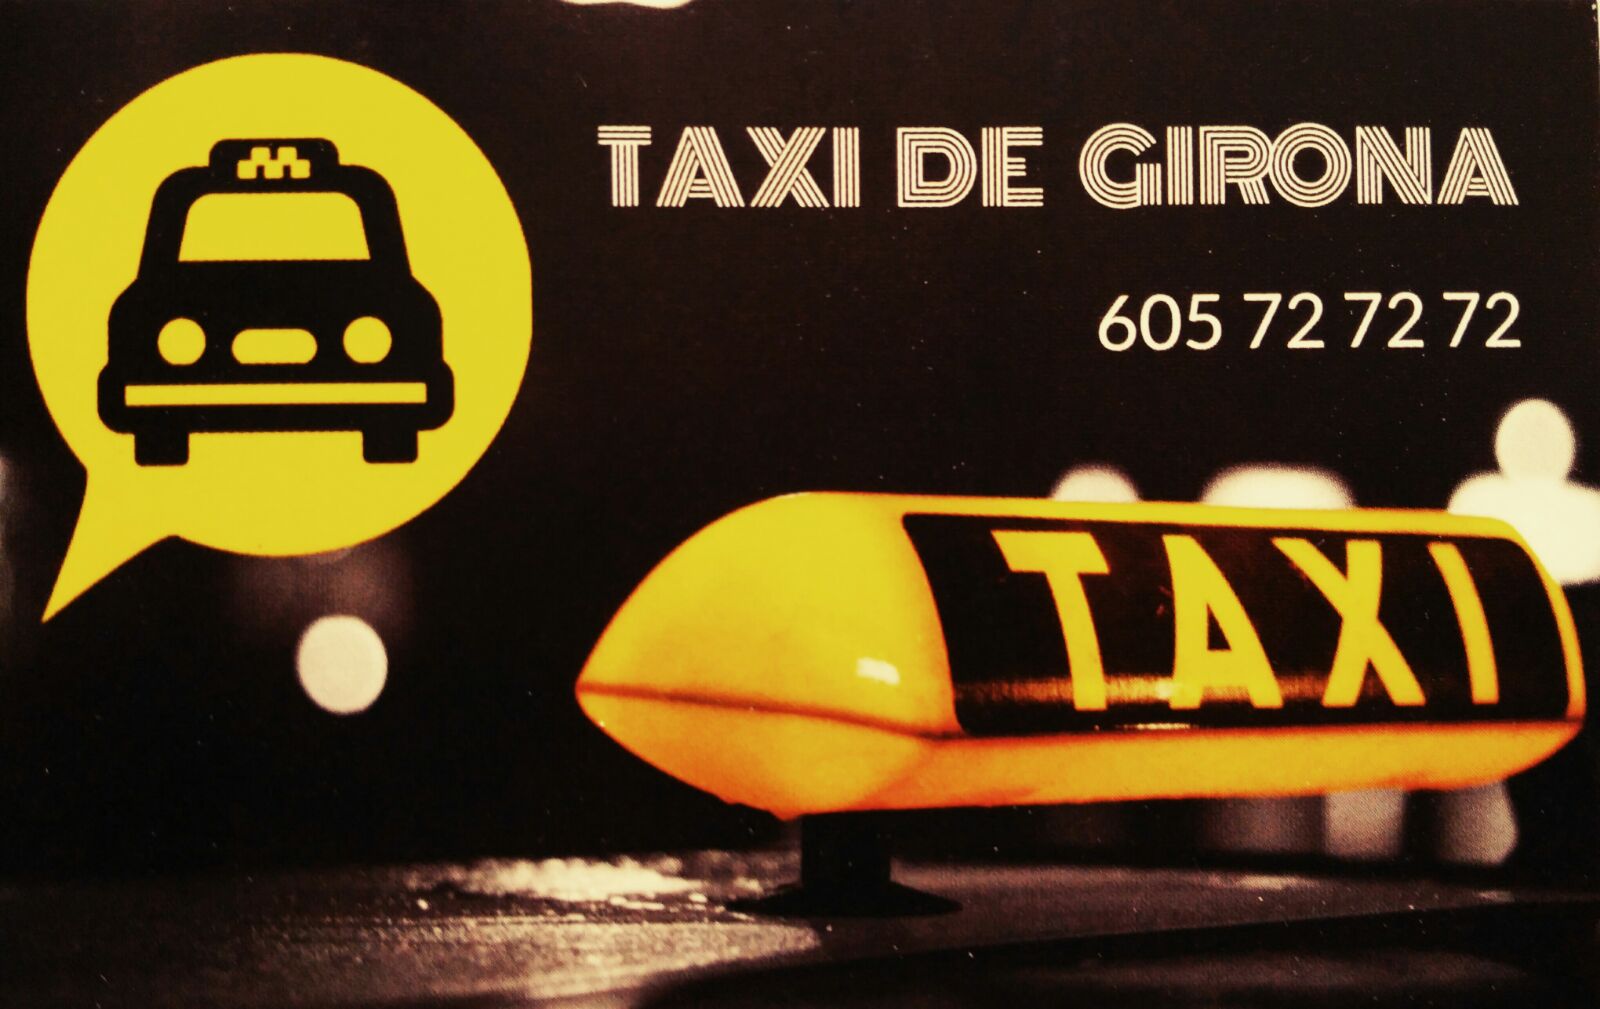 Taxi 24 Horas Girona (Taxi Girona)